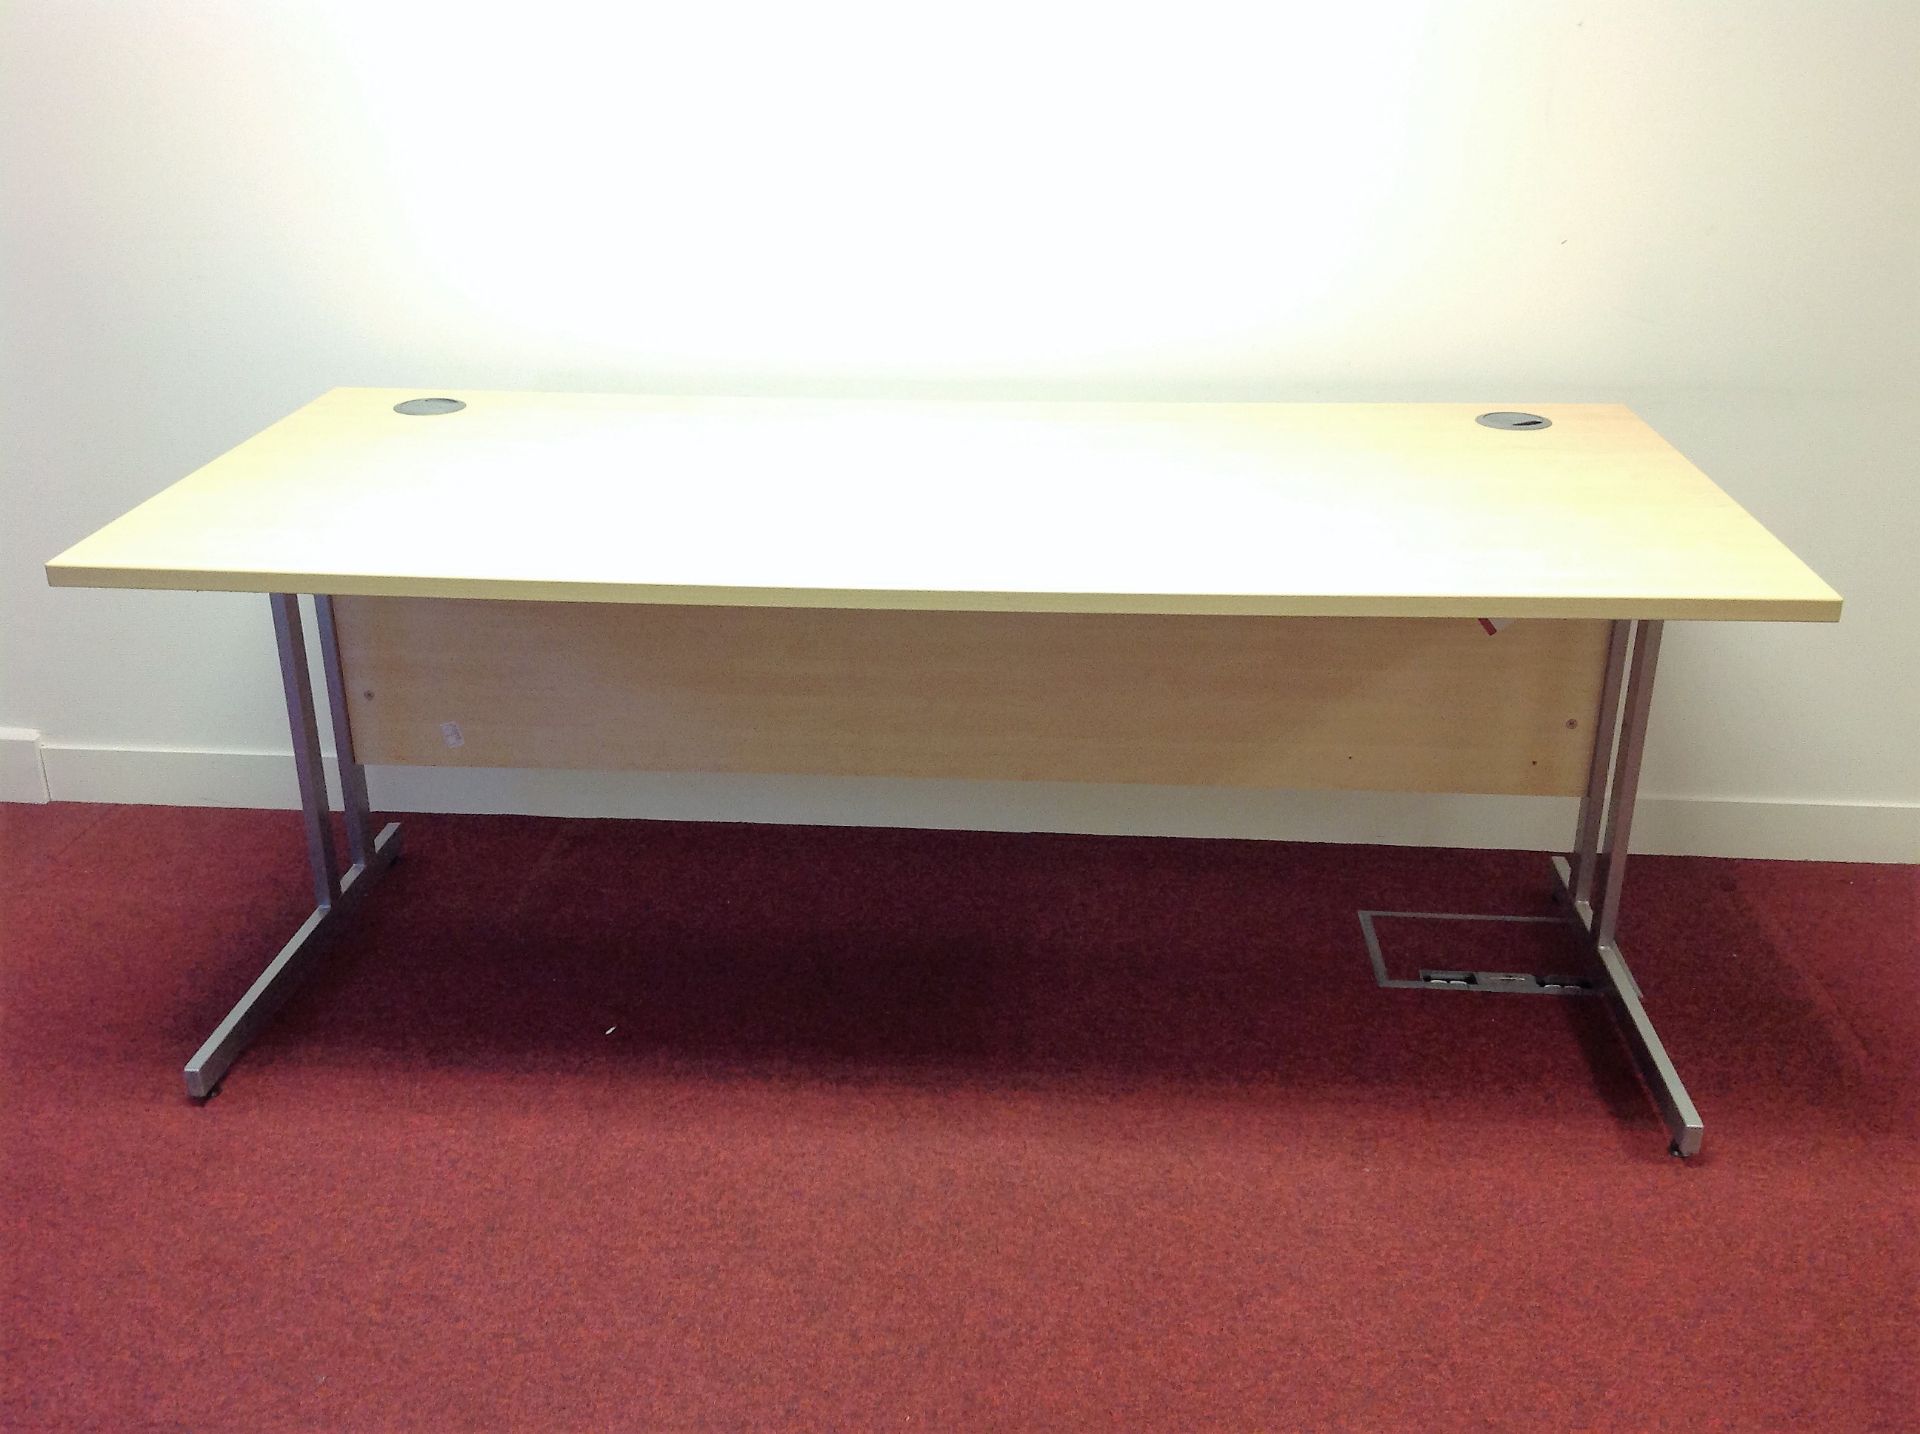 Rectangular Desk - Measurements: H: 73cm L: 180cm D: 80cm